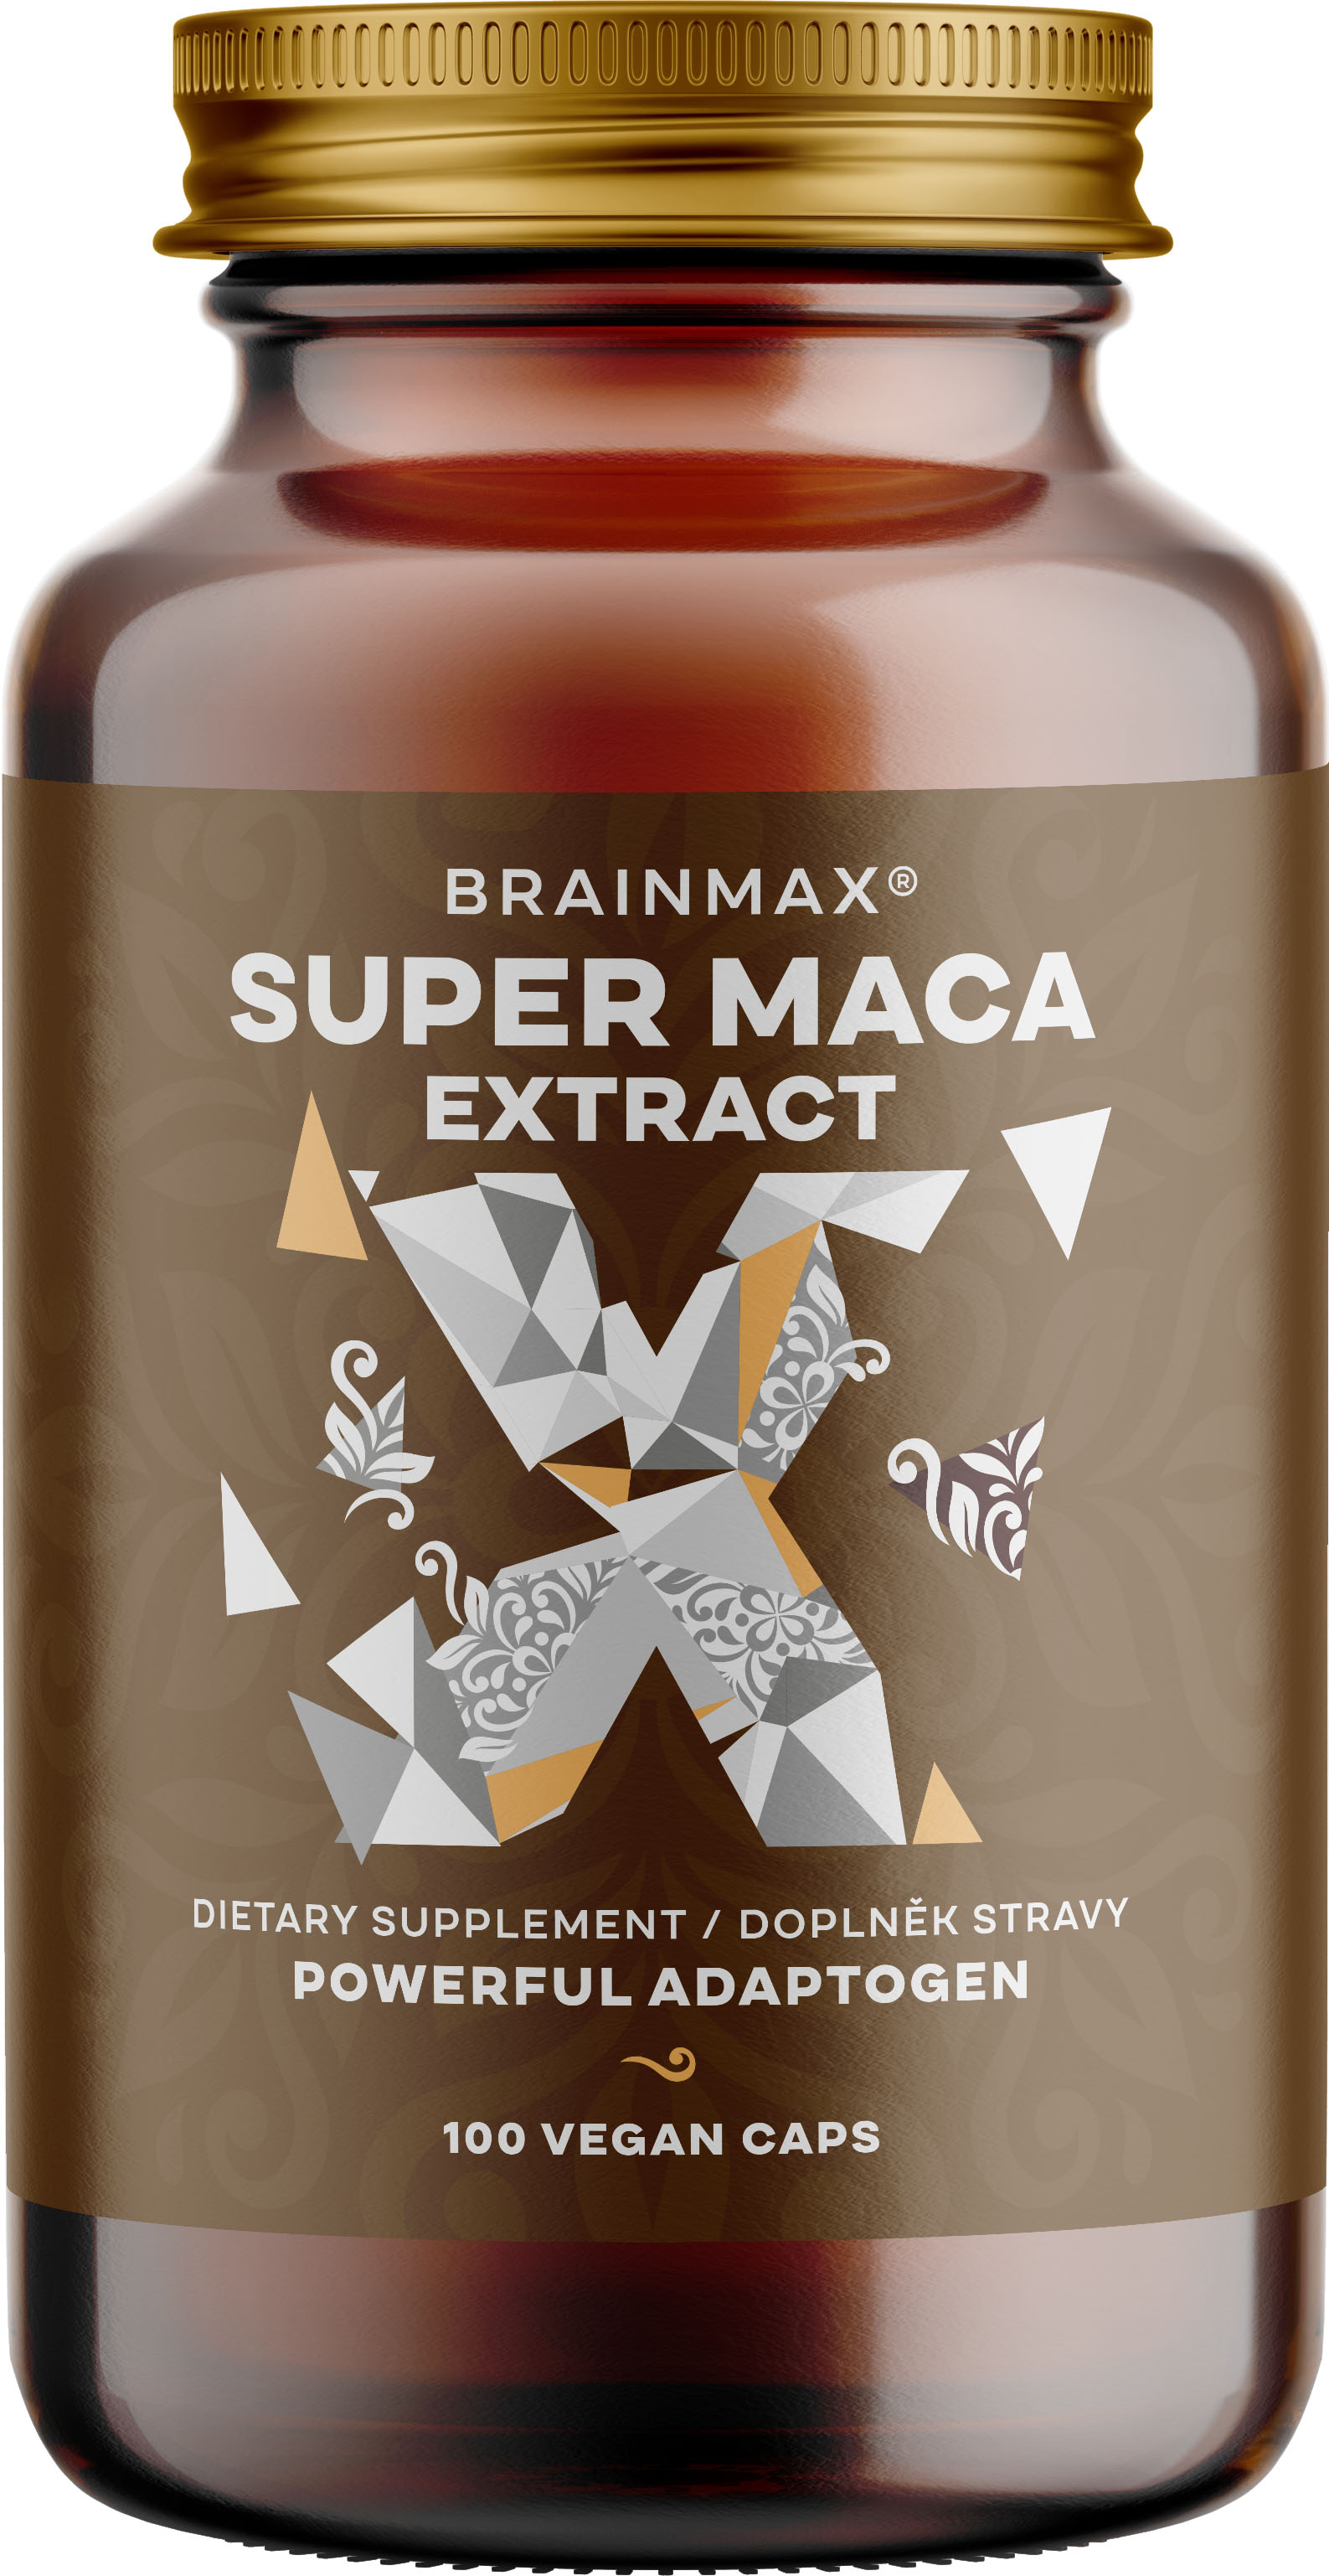 BrainMax Super Maca extrakt, 700 mg, 100 rostlinných kapslí Zvládněte lépe stres, mějte více energie a podpořte své reprodukční zdraví! Doplněk stravy, *CZ-BIO-001 certifikát